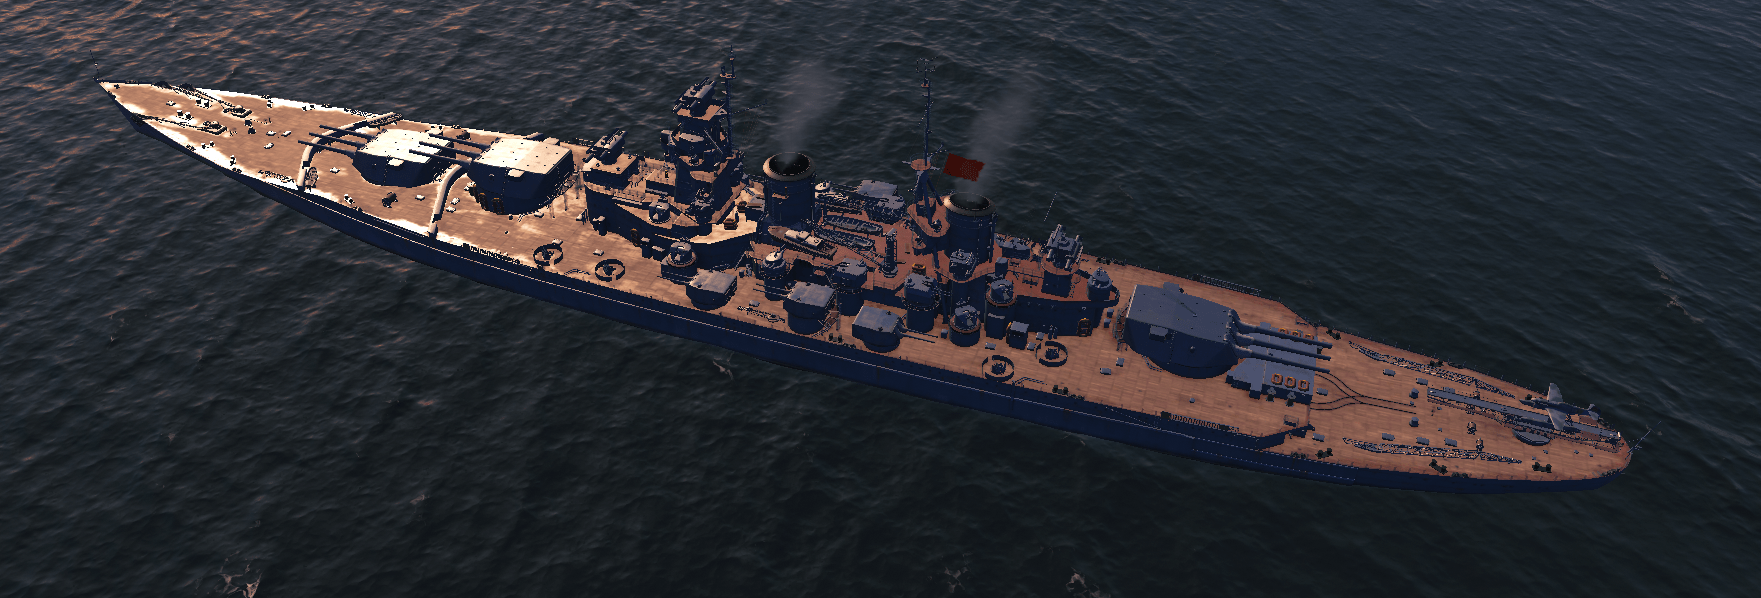 步子迈太大,导致流产的红色大和——苏联级战列舰